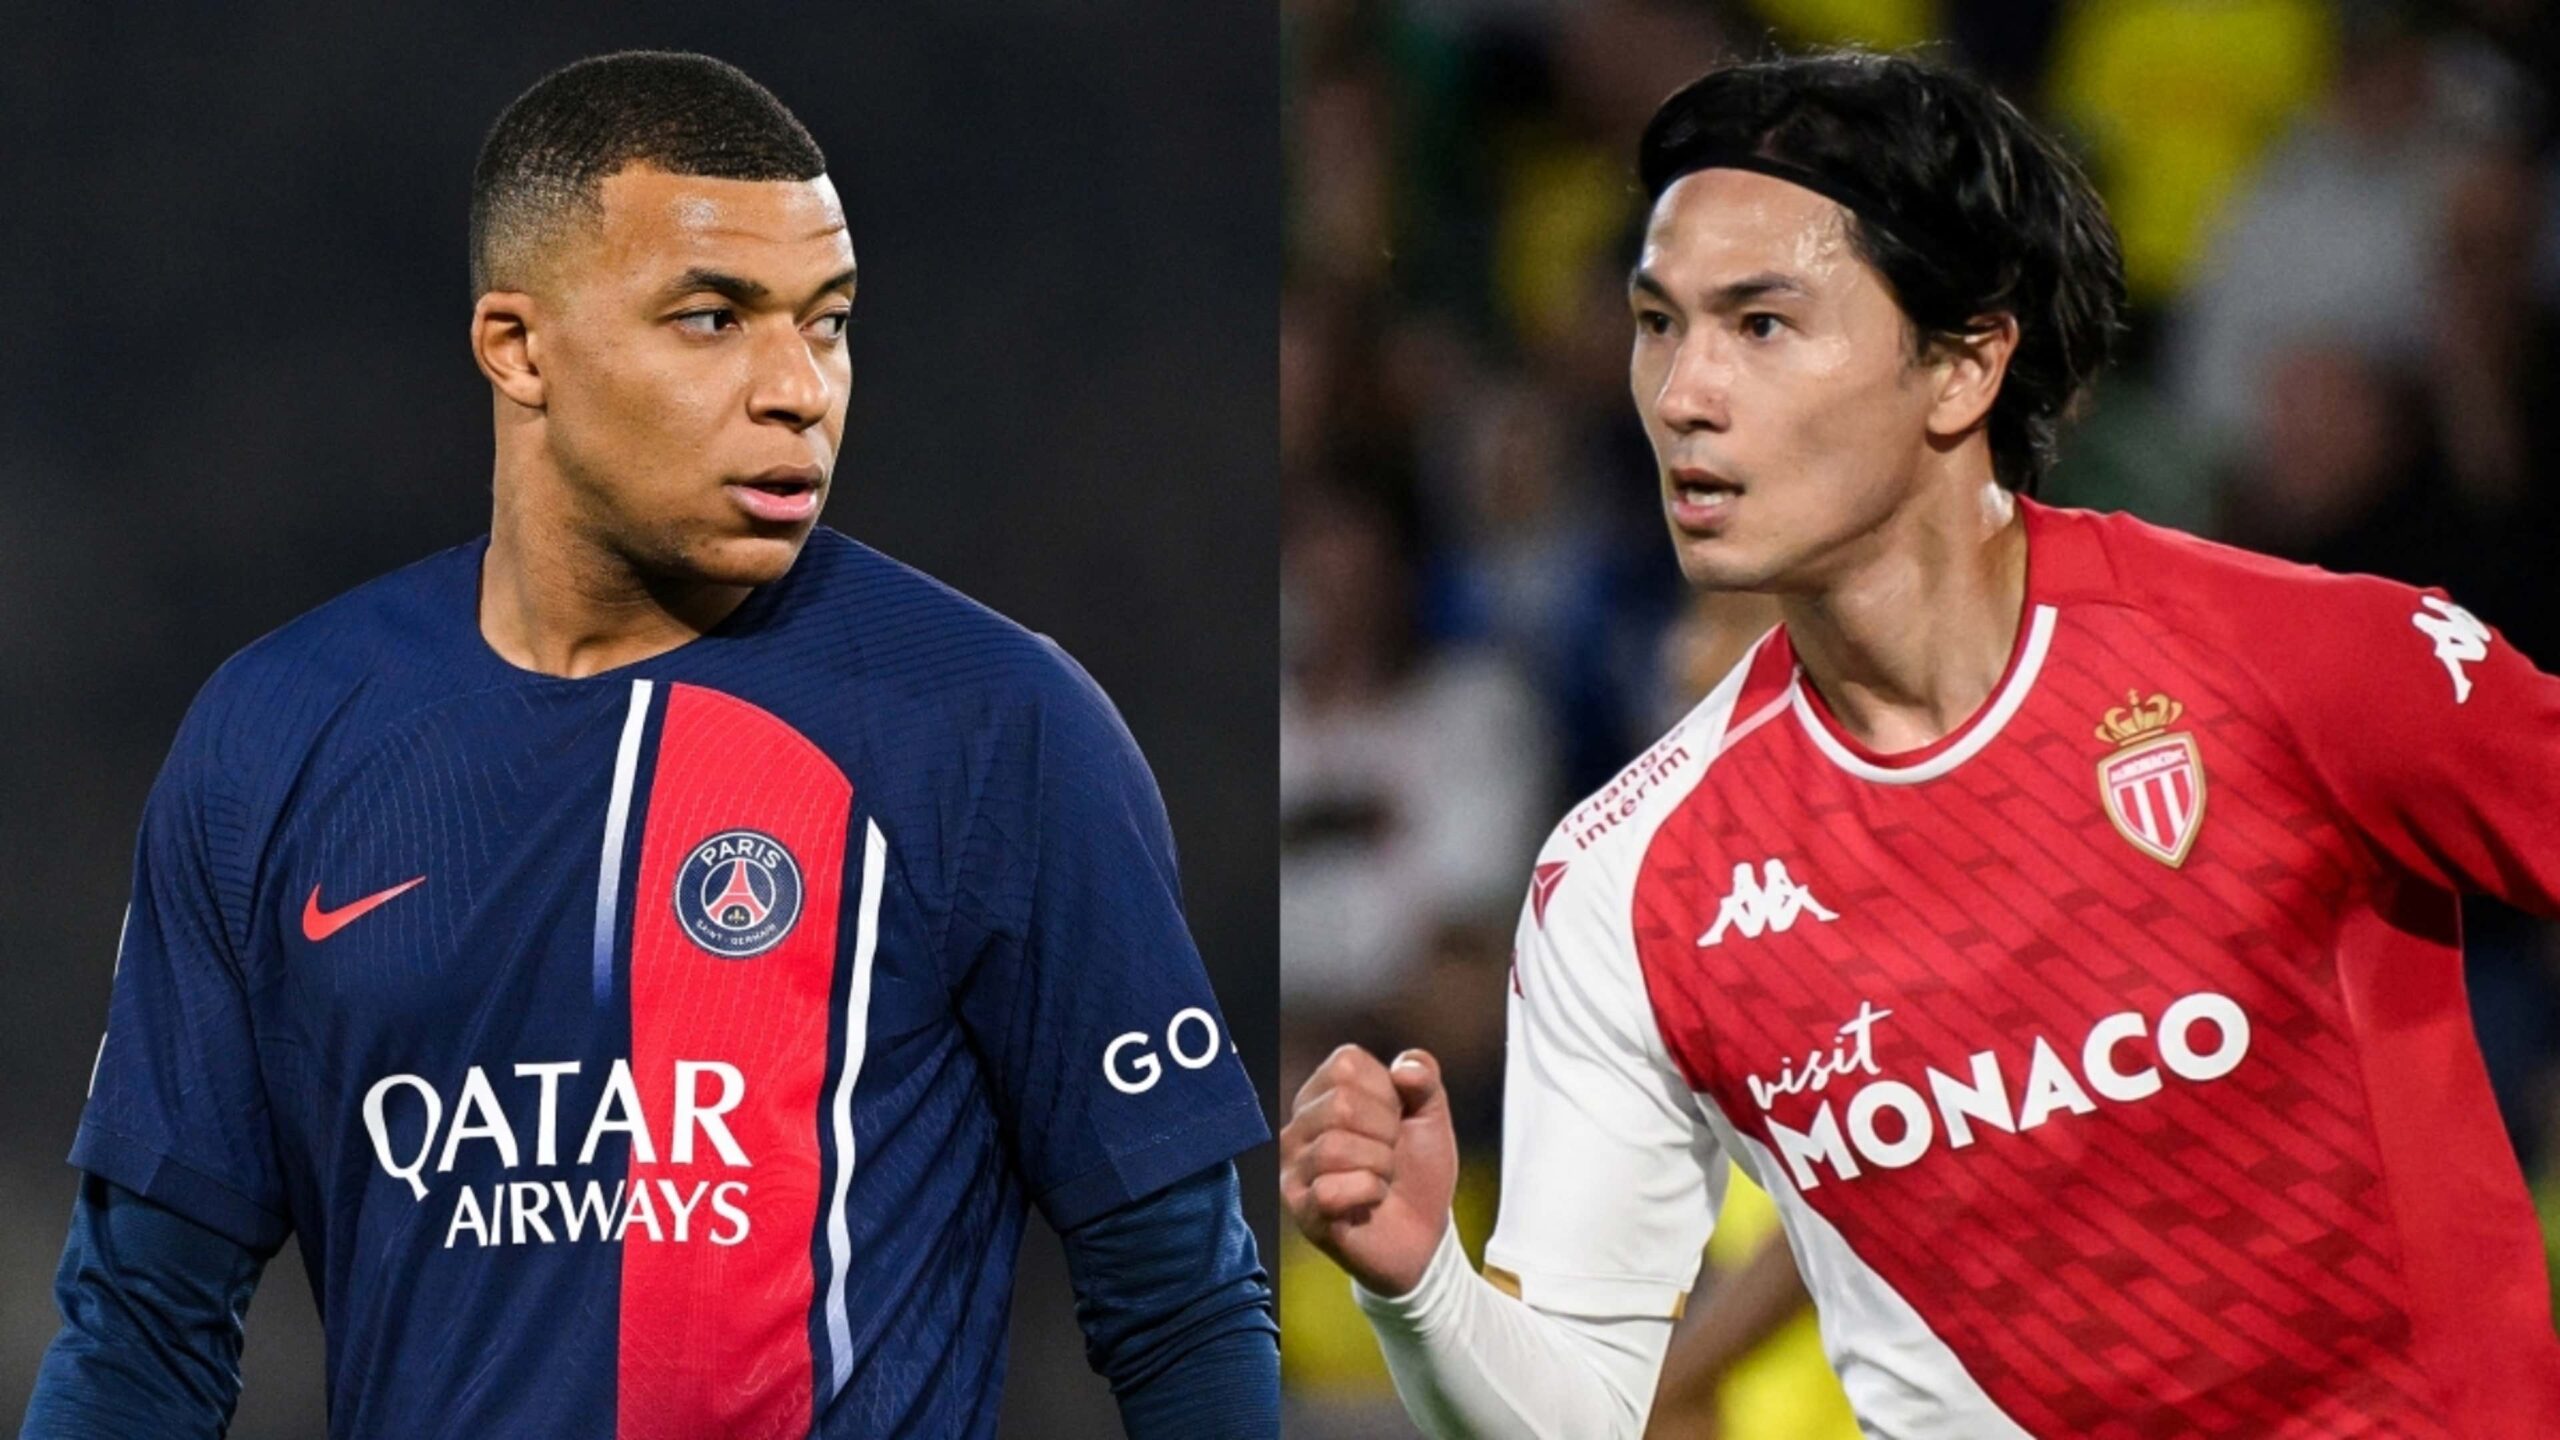 Les chaînes ouvertes diffuseront le match entre le Paris Saint-Germain et Monaco en championnat de France